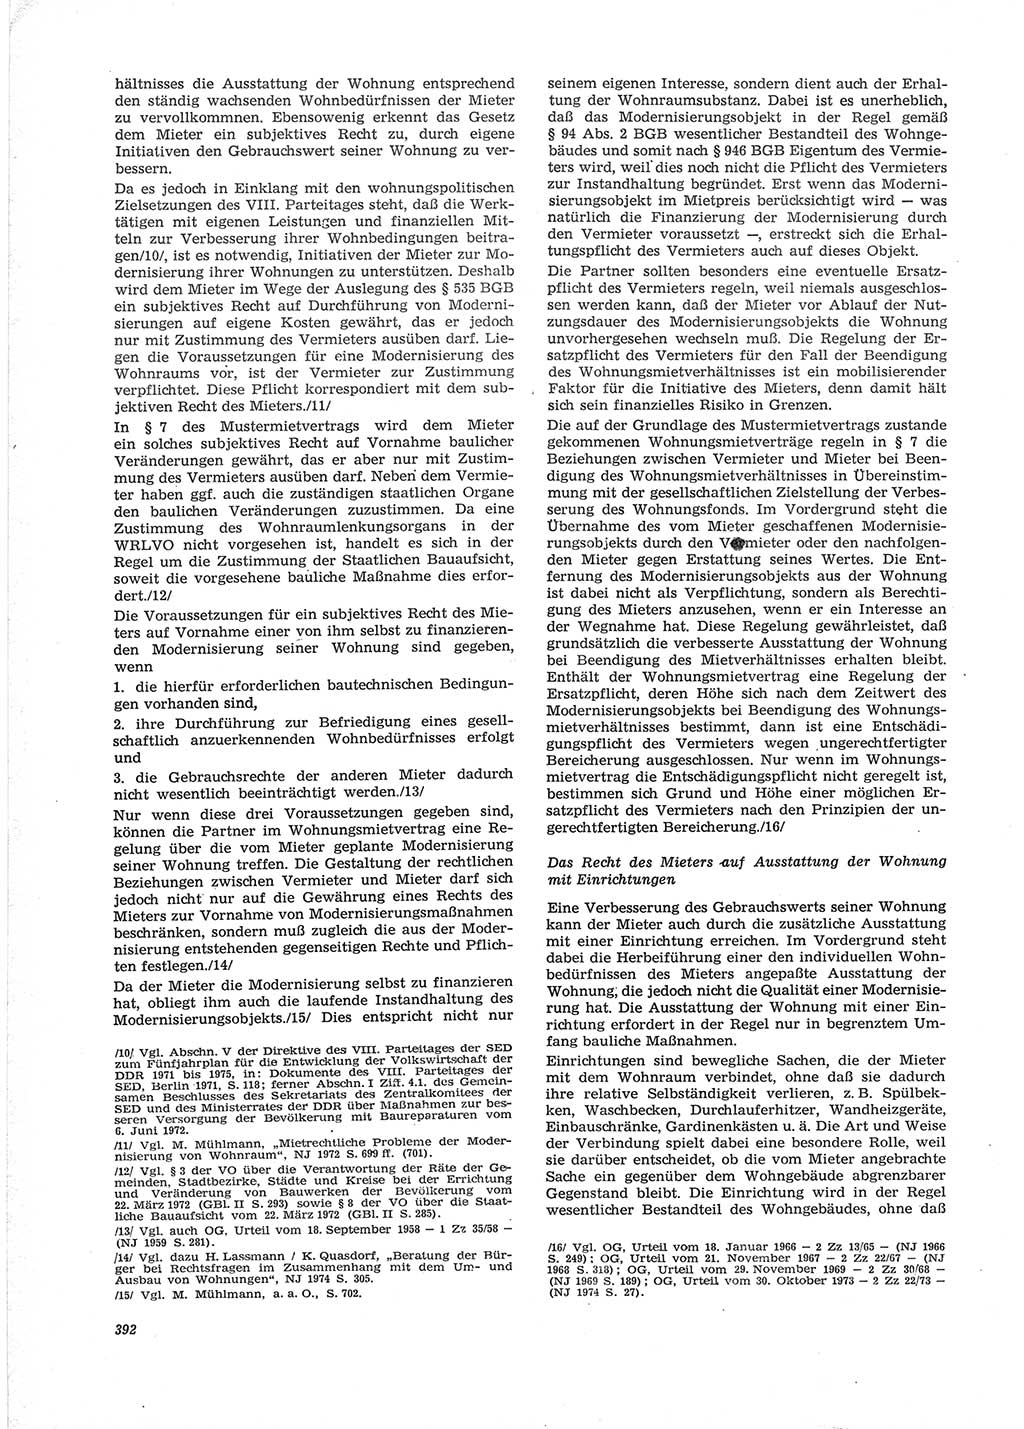 Neue Justiz (NJ), Zeitschrift für Recht und Rechtswissenschaft [Deutsche Demokratische Republik (DDR)], 28. Jahrgang 1974, Seite 392 (NJ DDR 1974, S. 392)